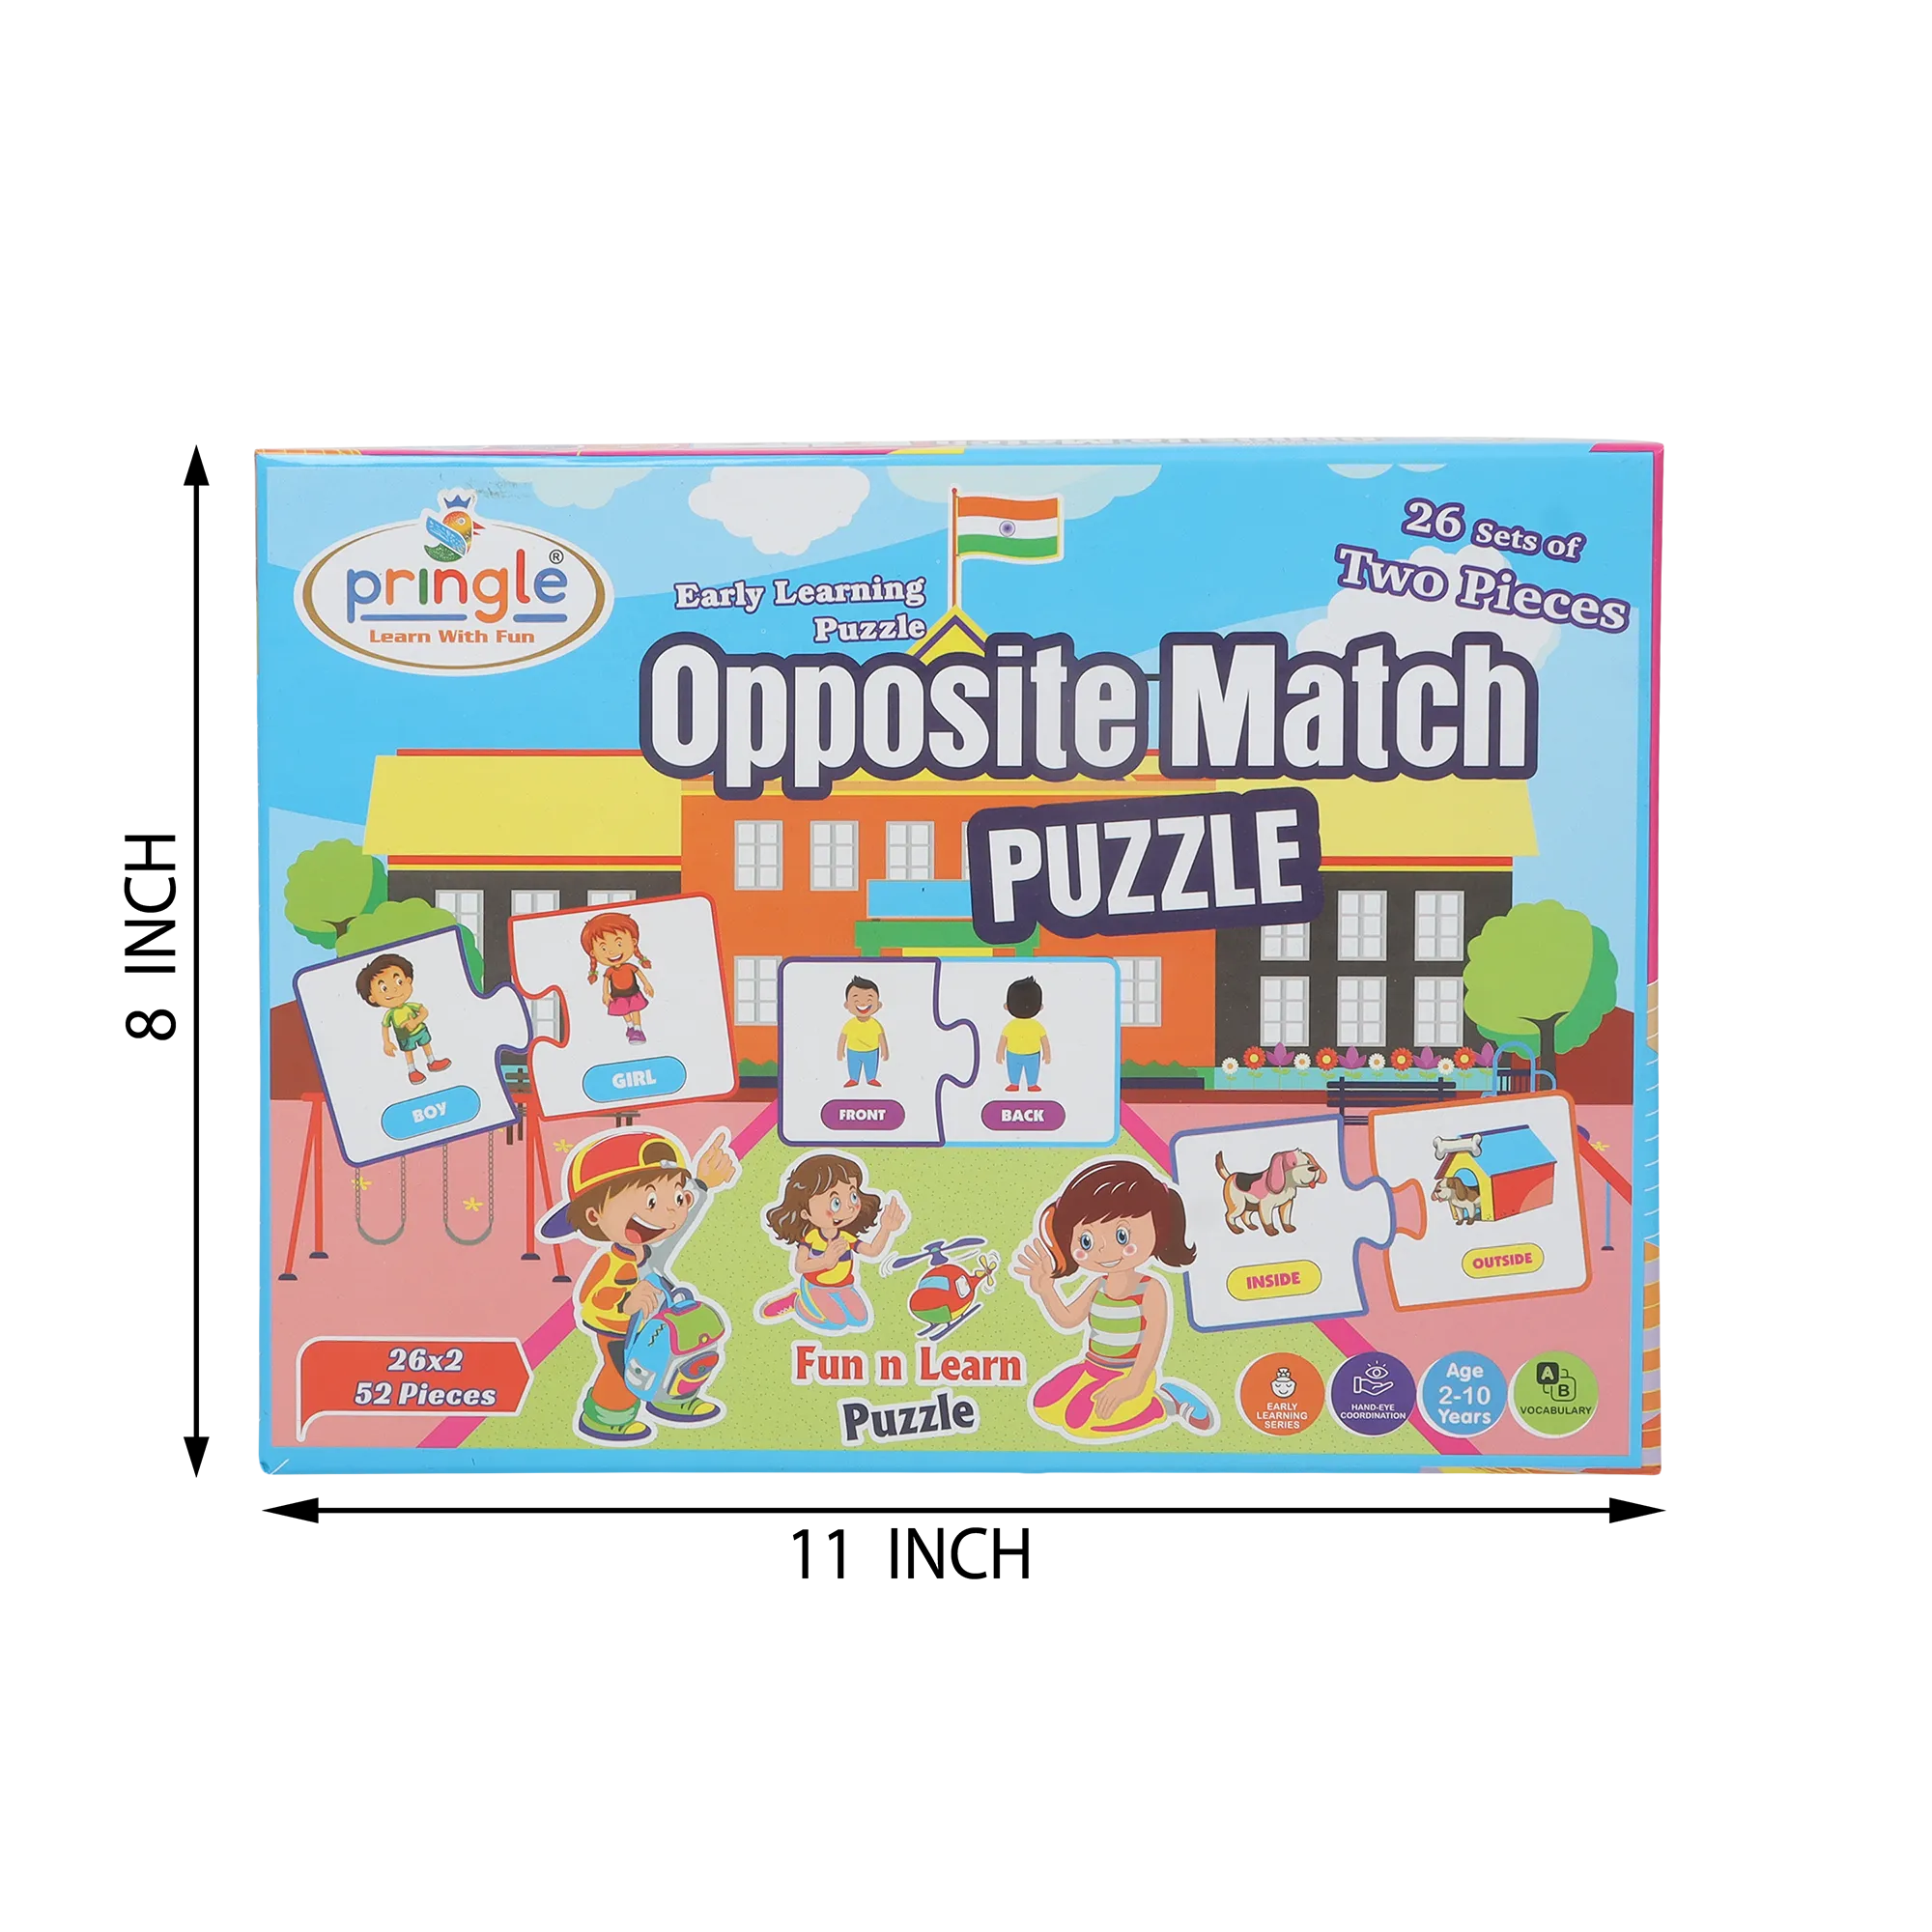 PR28 Opposite Match Puzzle